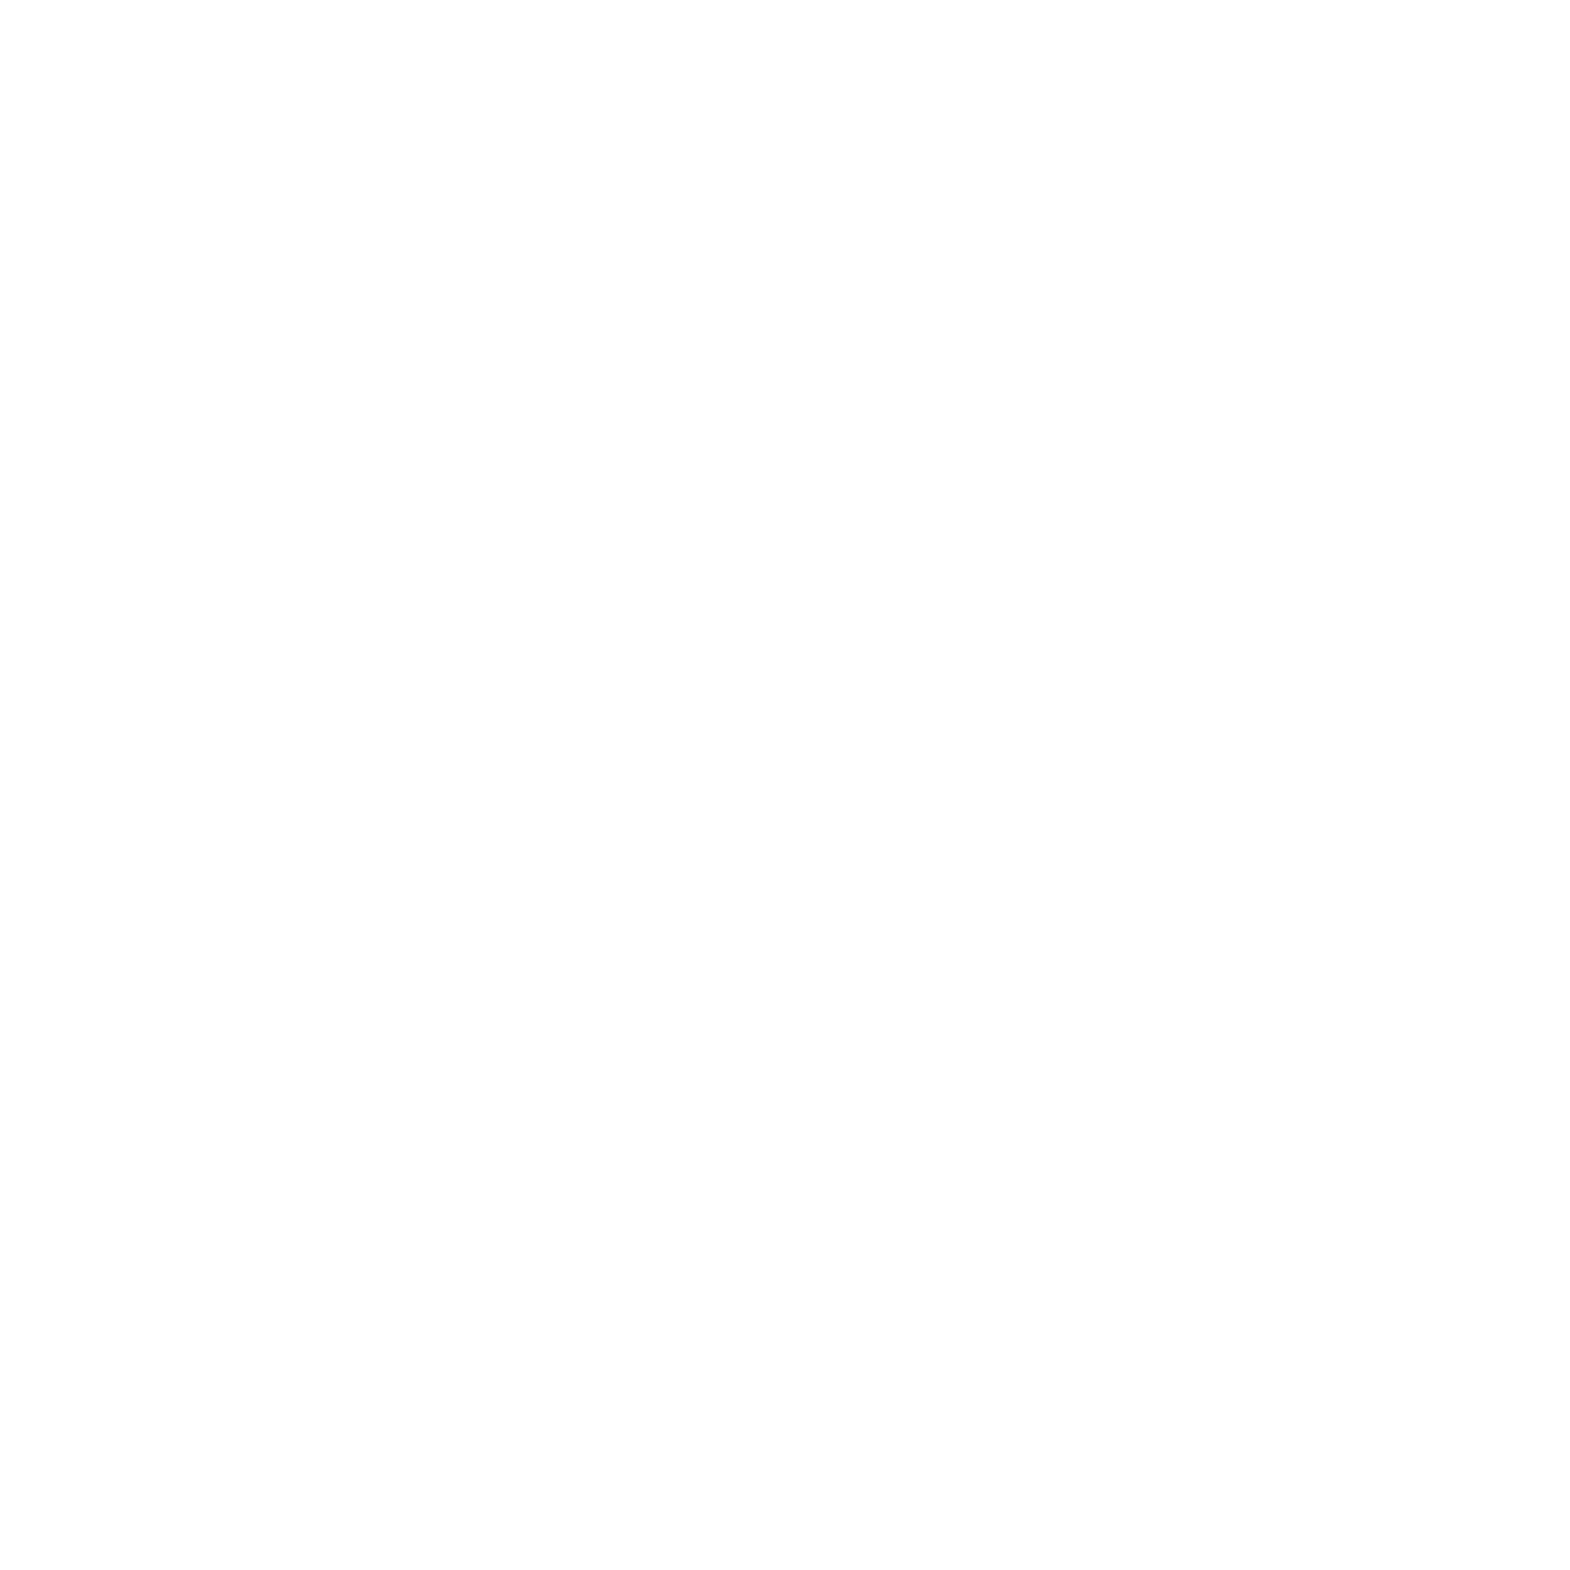 Telefónica logo for dark backgrounds (transparent PNG)